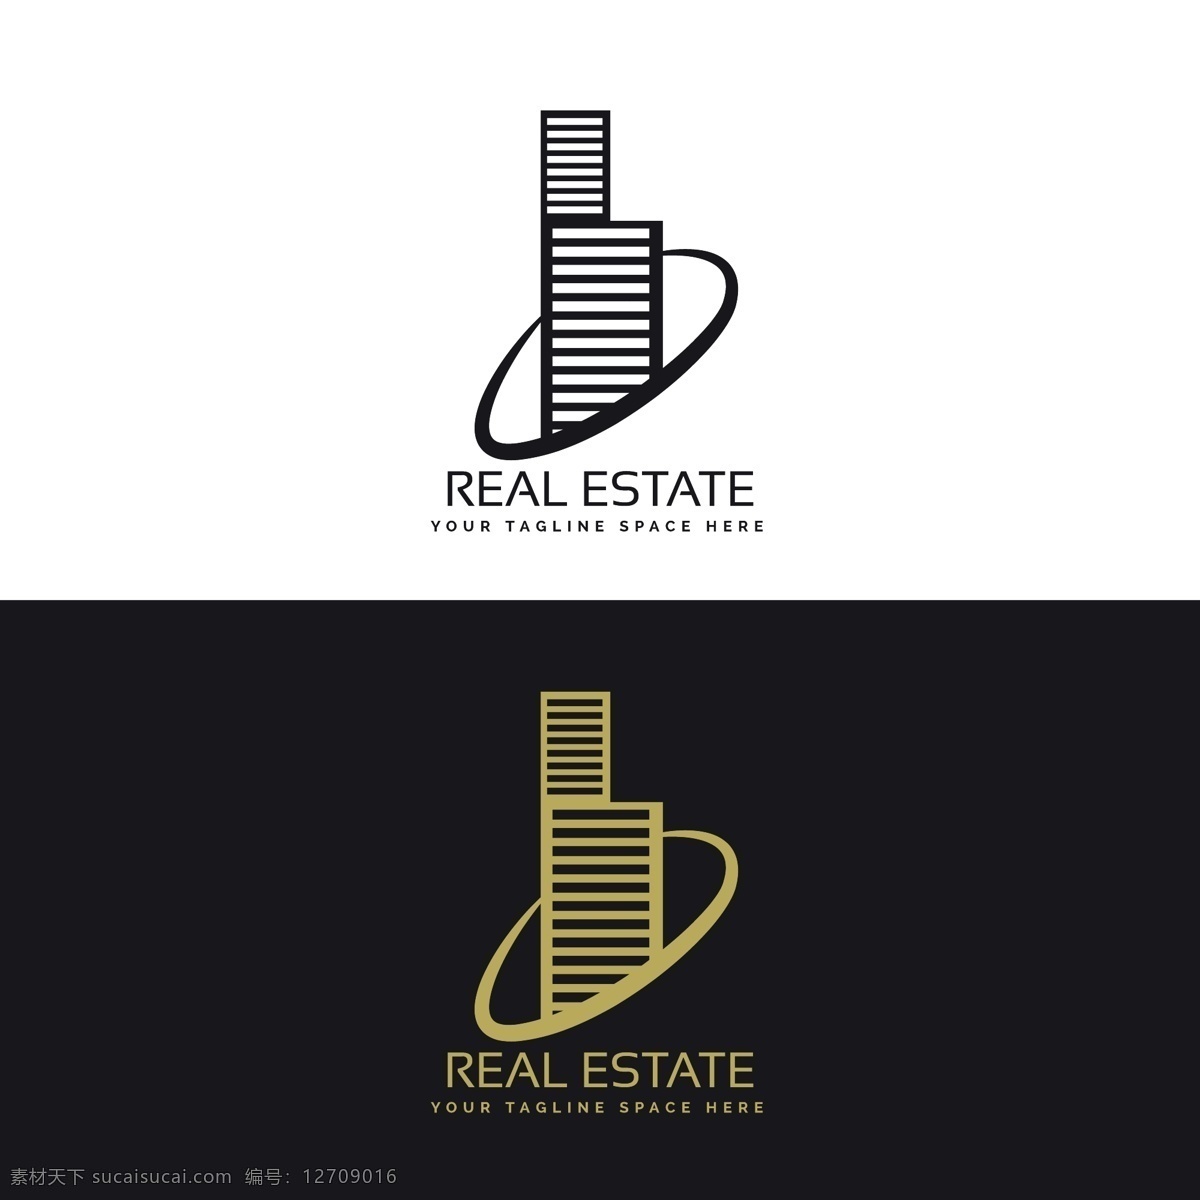 摩天大楼 房地产 标志 企业 住宅 图标 模板 建筑 家居 营销 创意 公司 企业形象 品牌 金融 现代 符号 身份